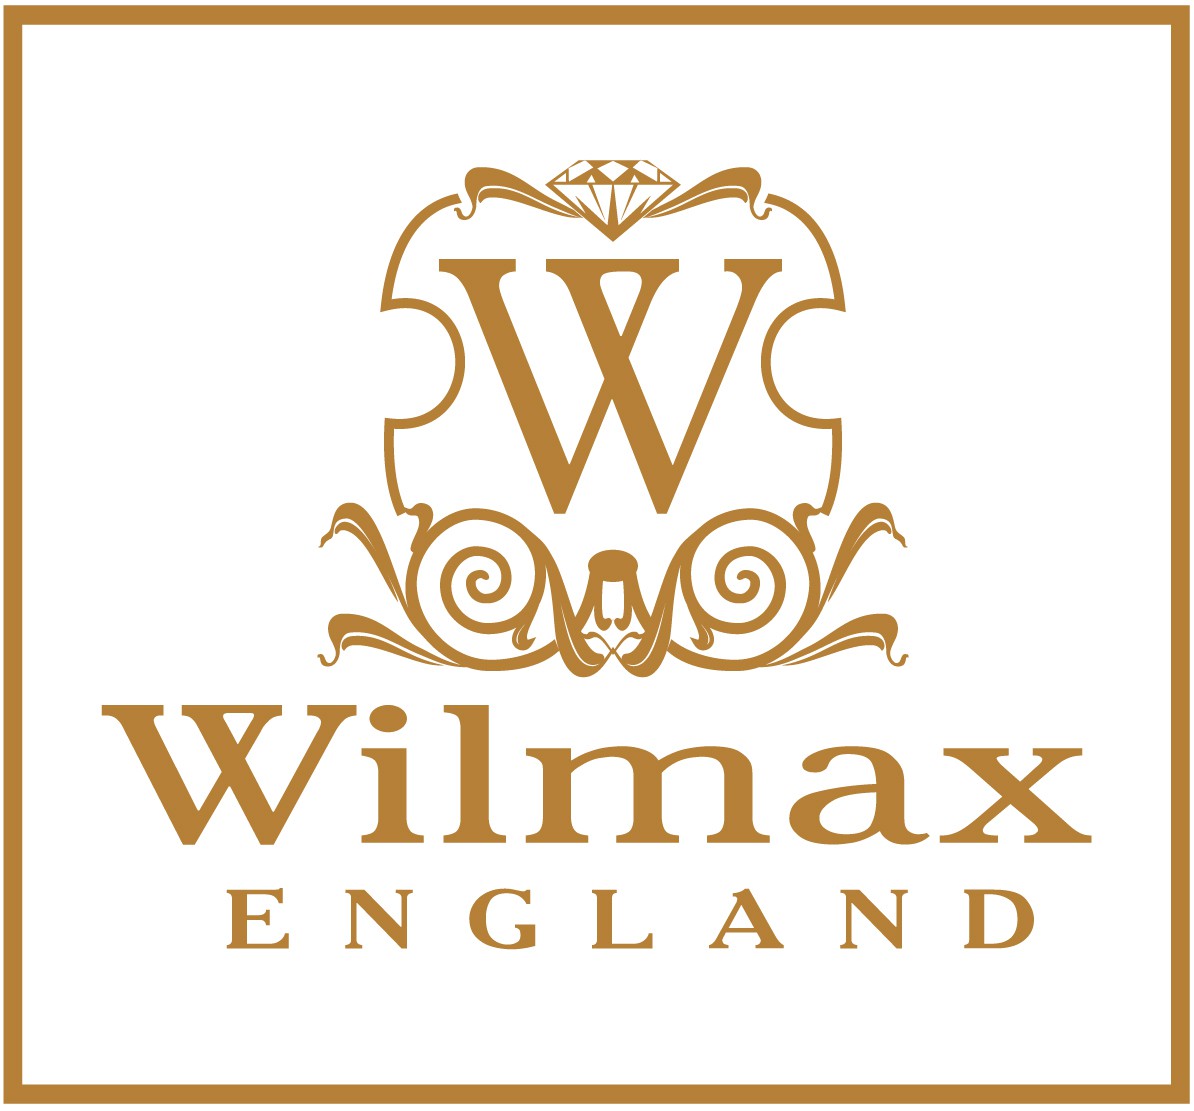 WILMAX England